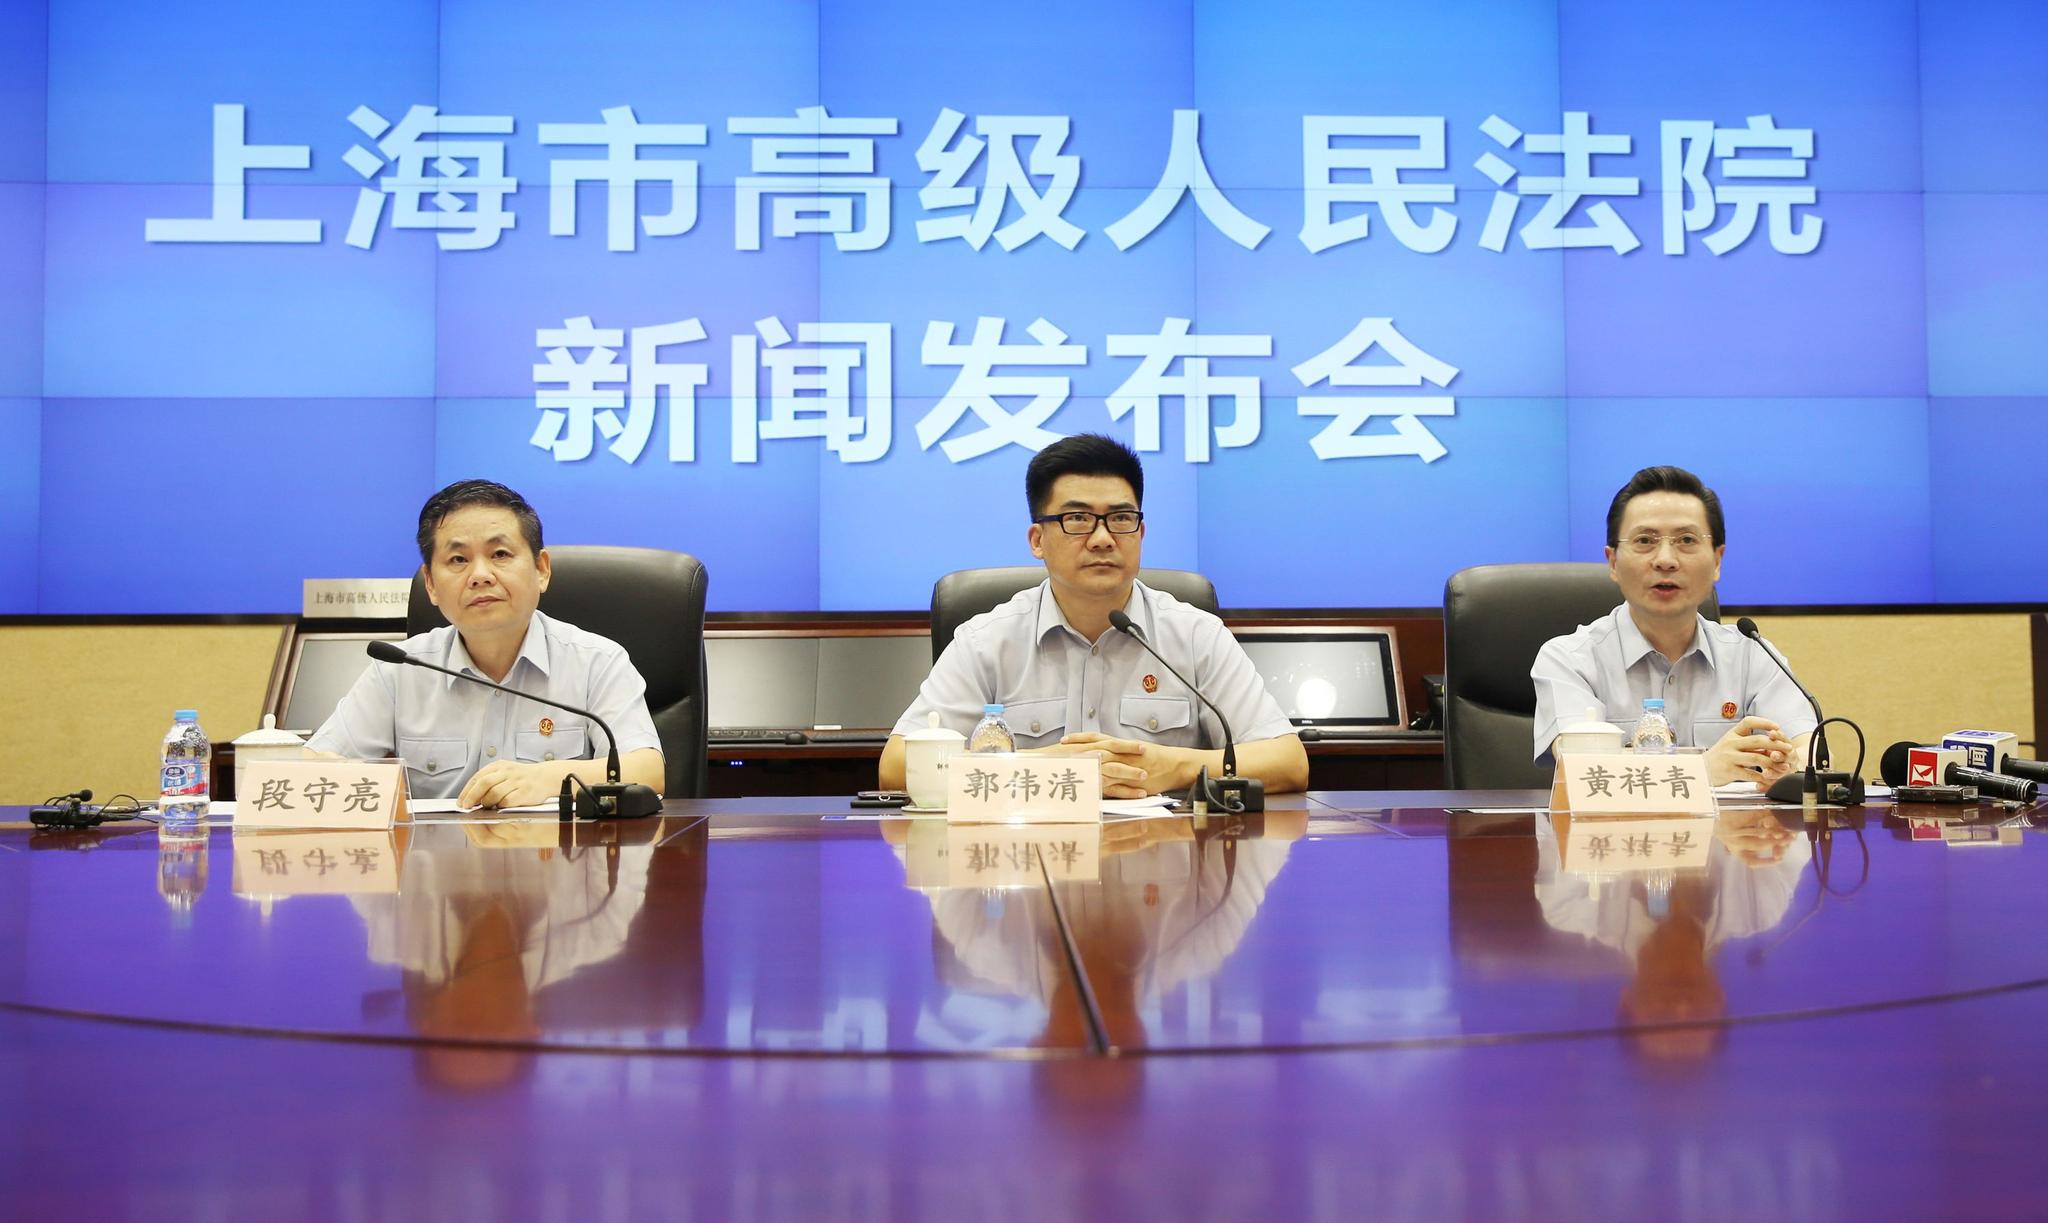 上海审结首批套路贷案件 揭秘套路贷五大基本